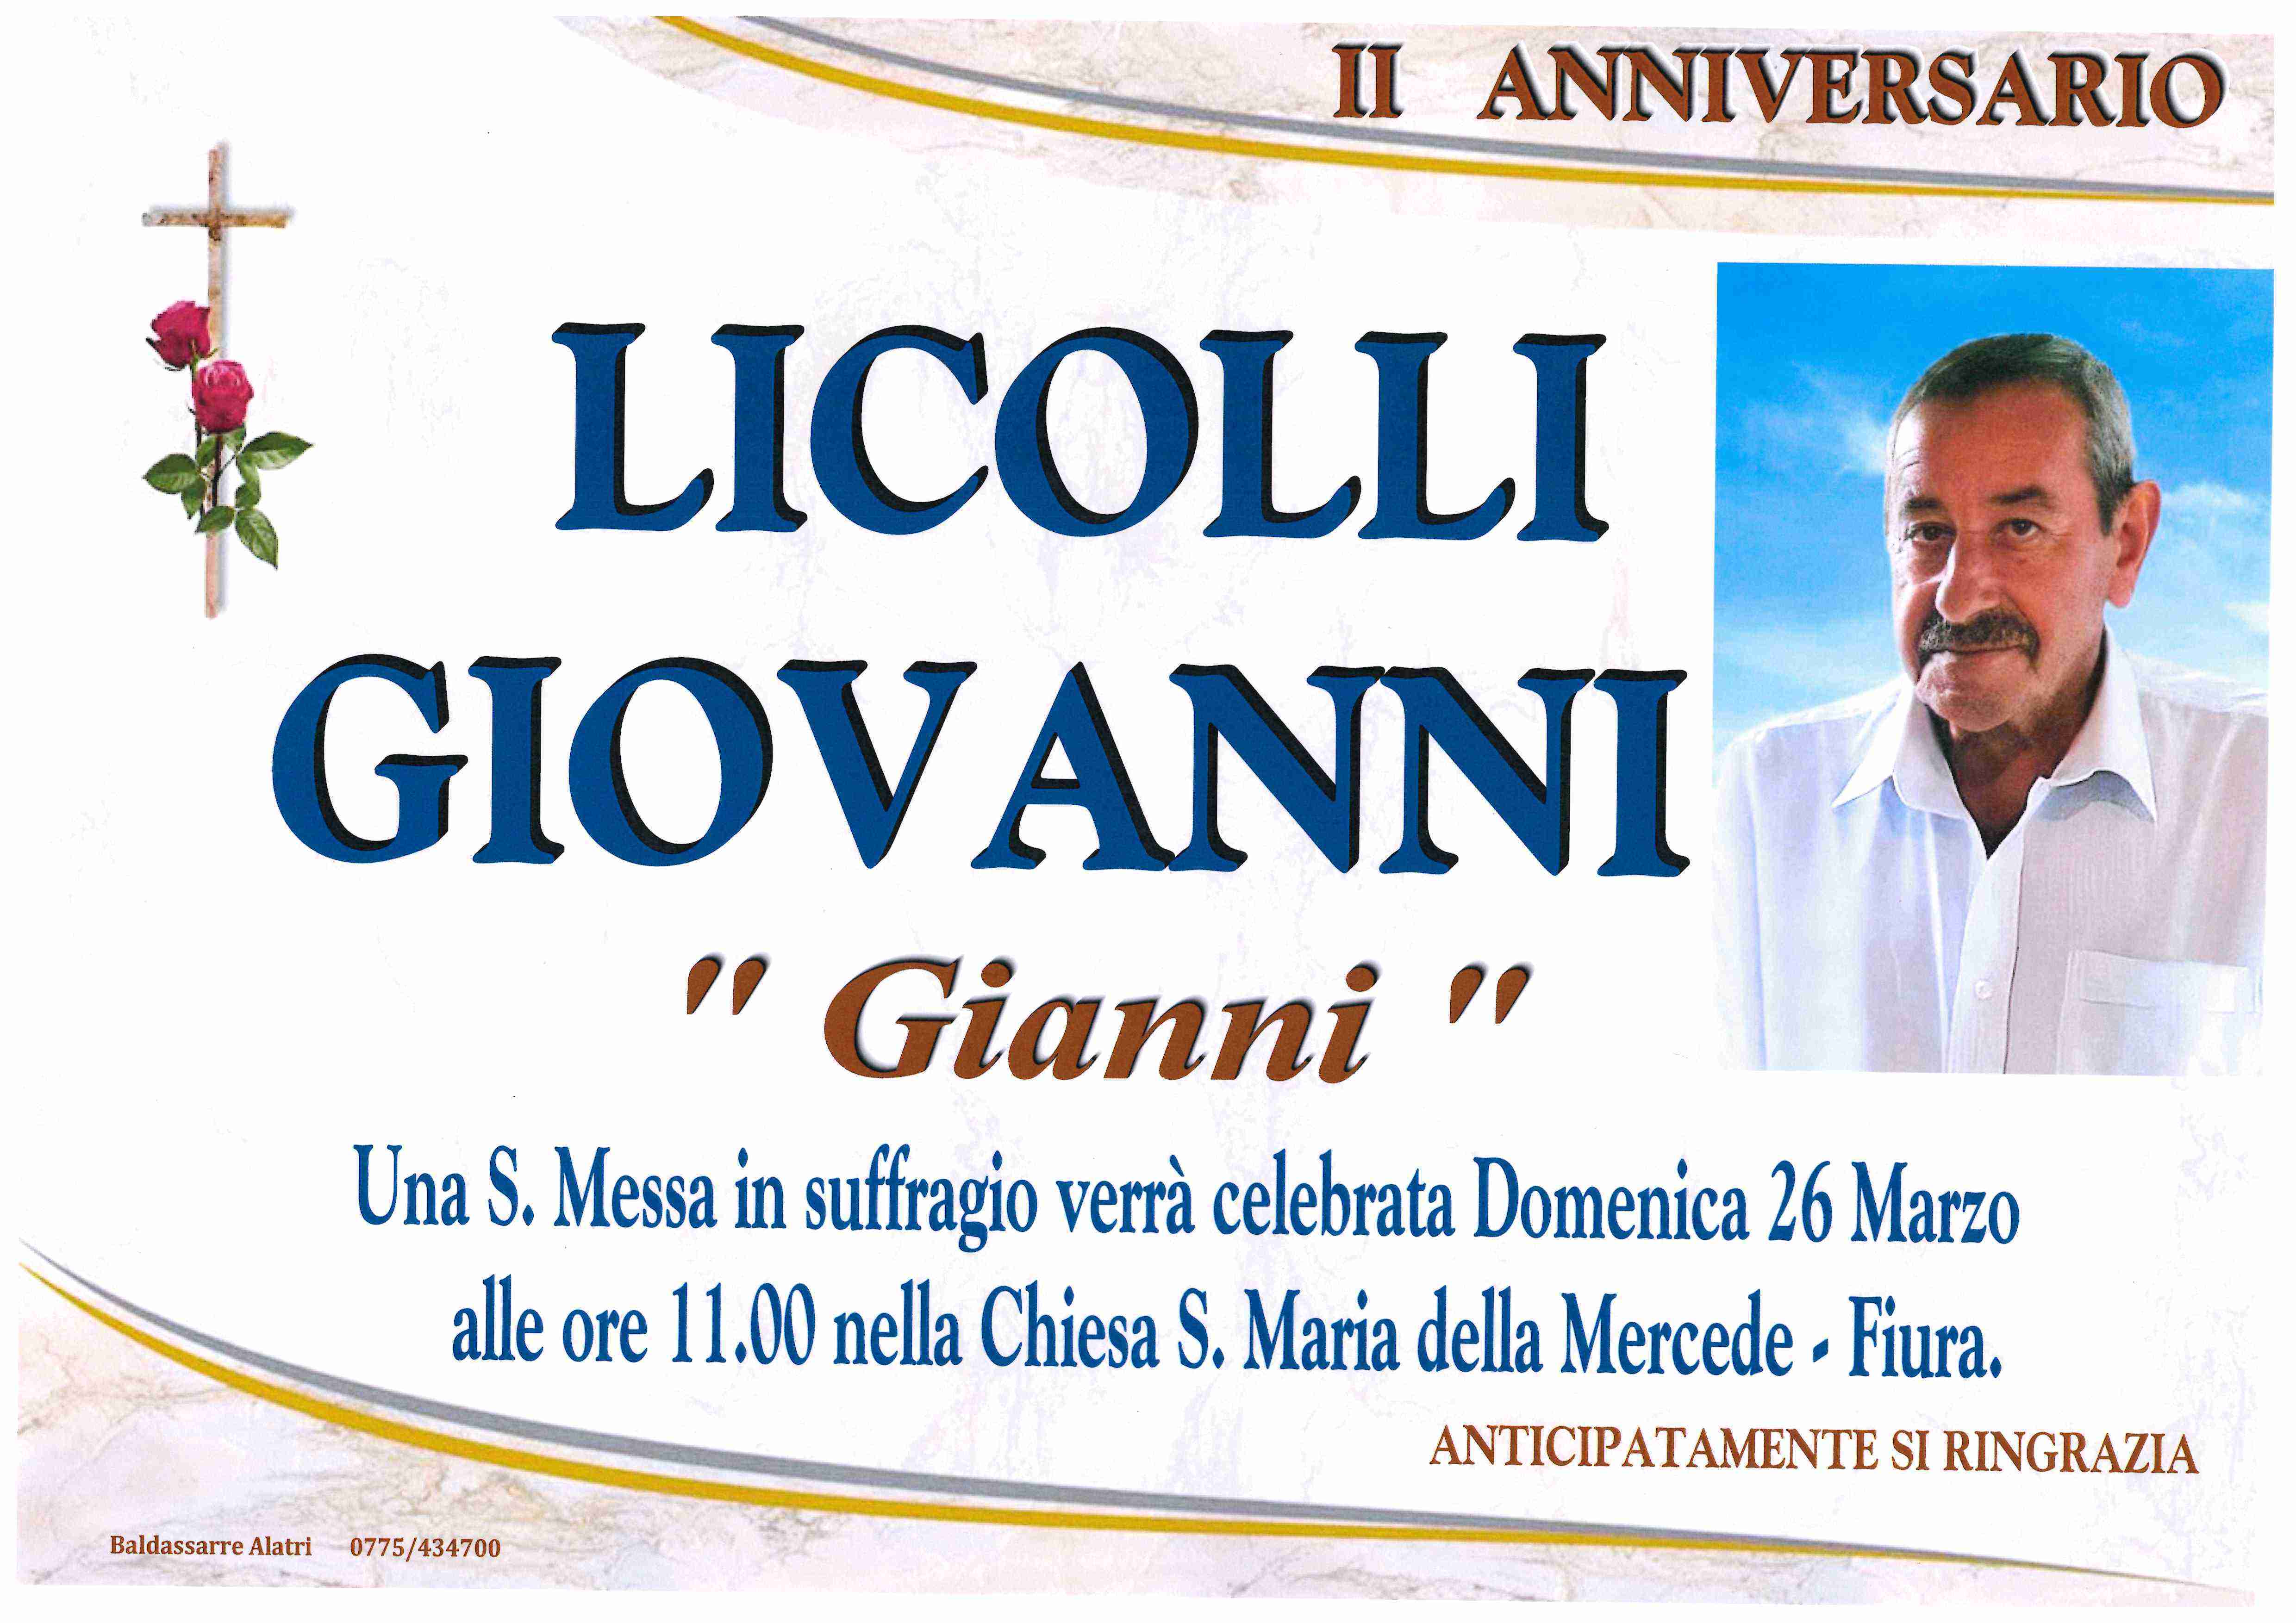 Giovanni Licolli